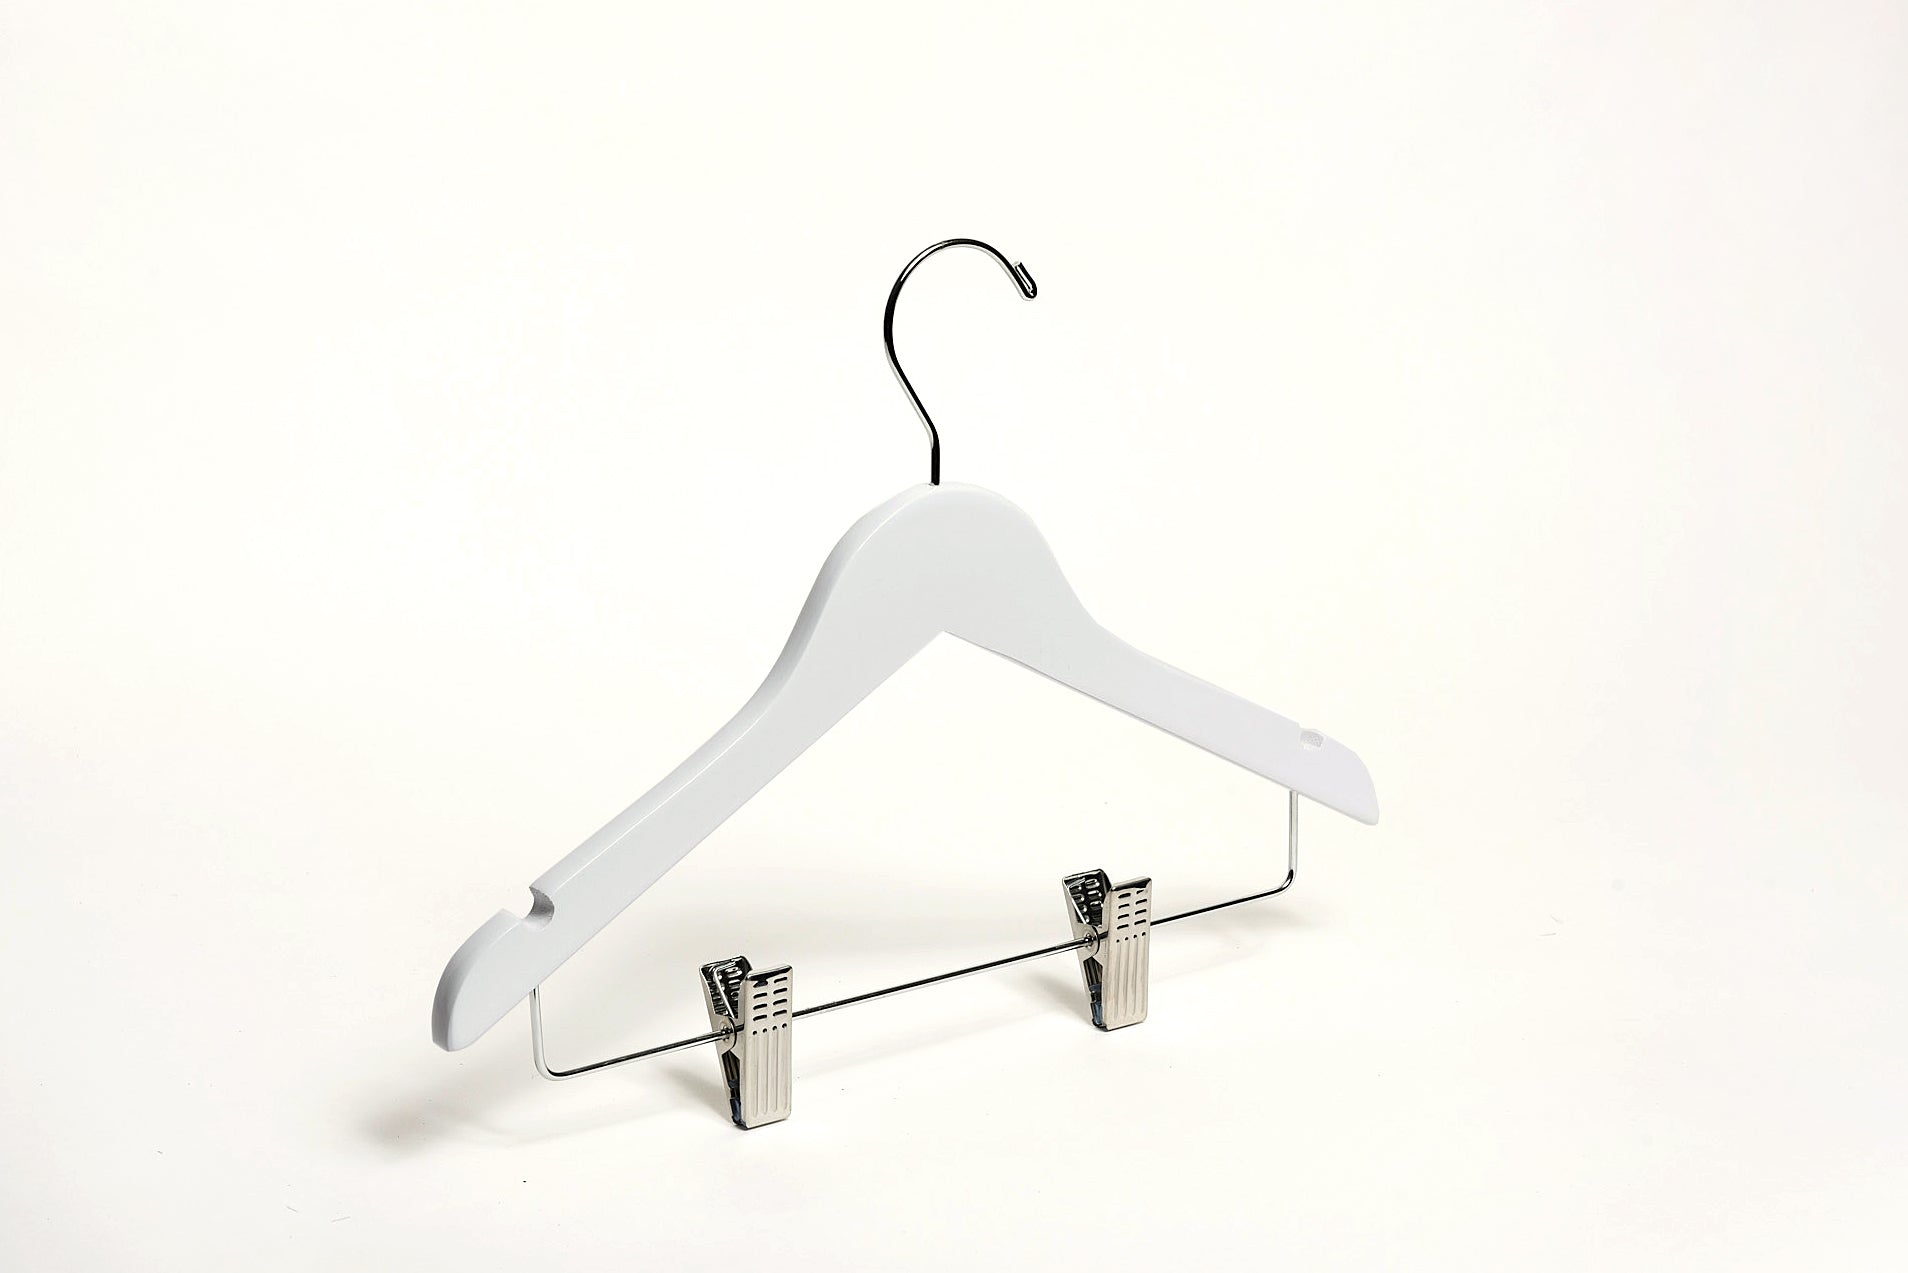 LUXURY Kids Wooden Hangers White w/ Gold Hook –